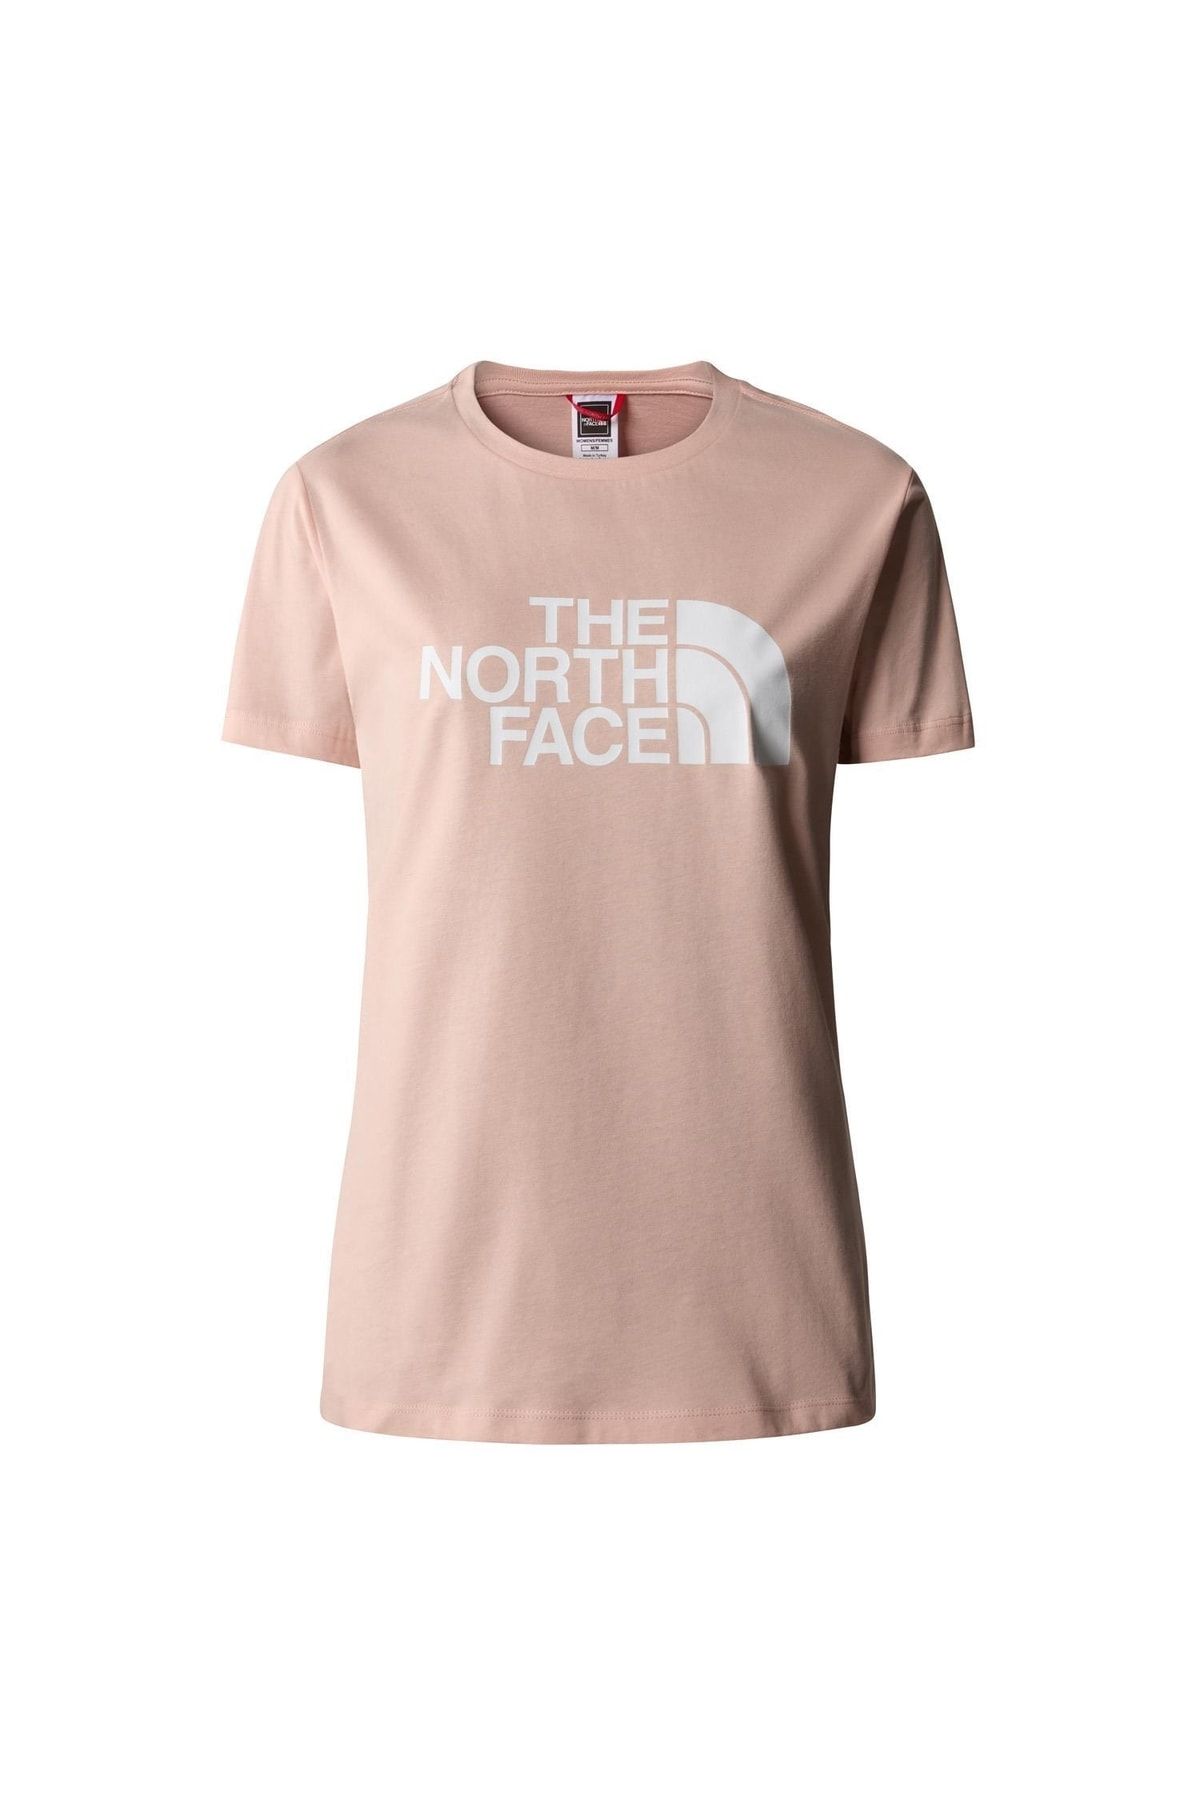 The North Face W Standard S/s Tee - Eu Kadın T-shirt Nf0a7zgglk61